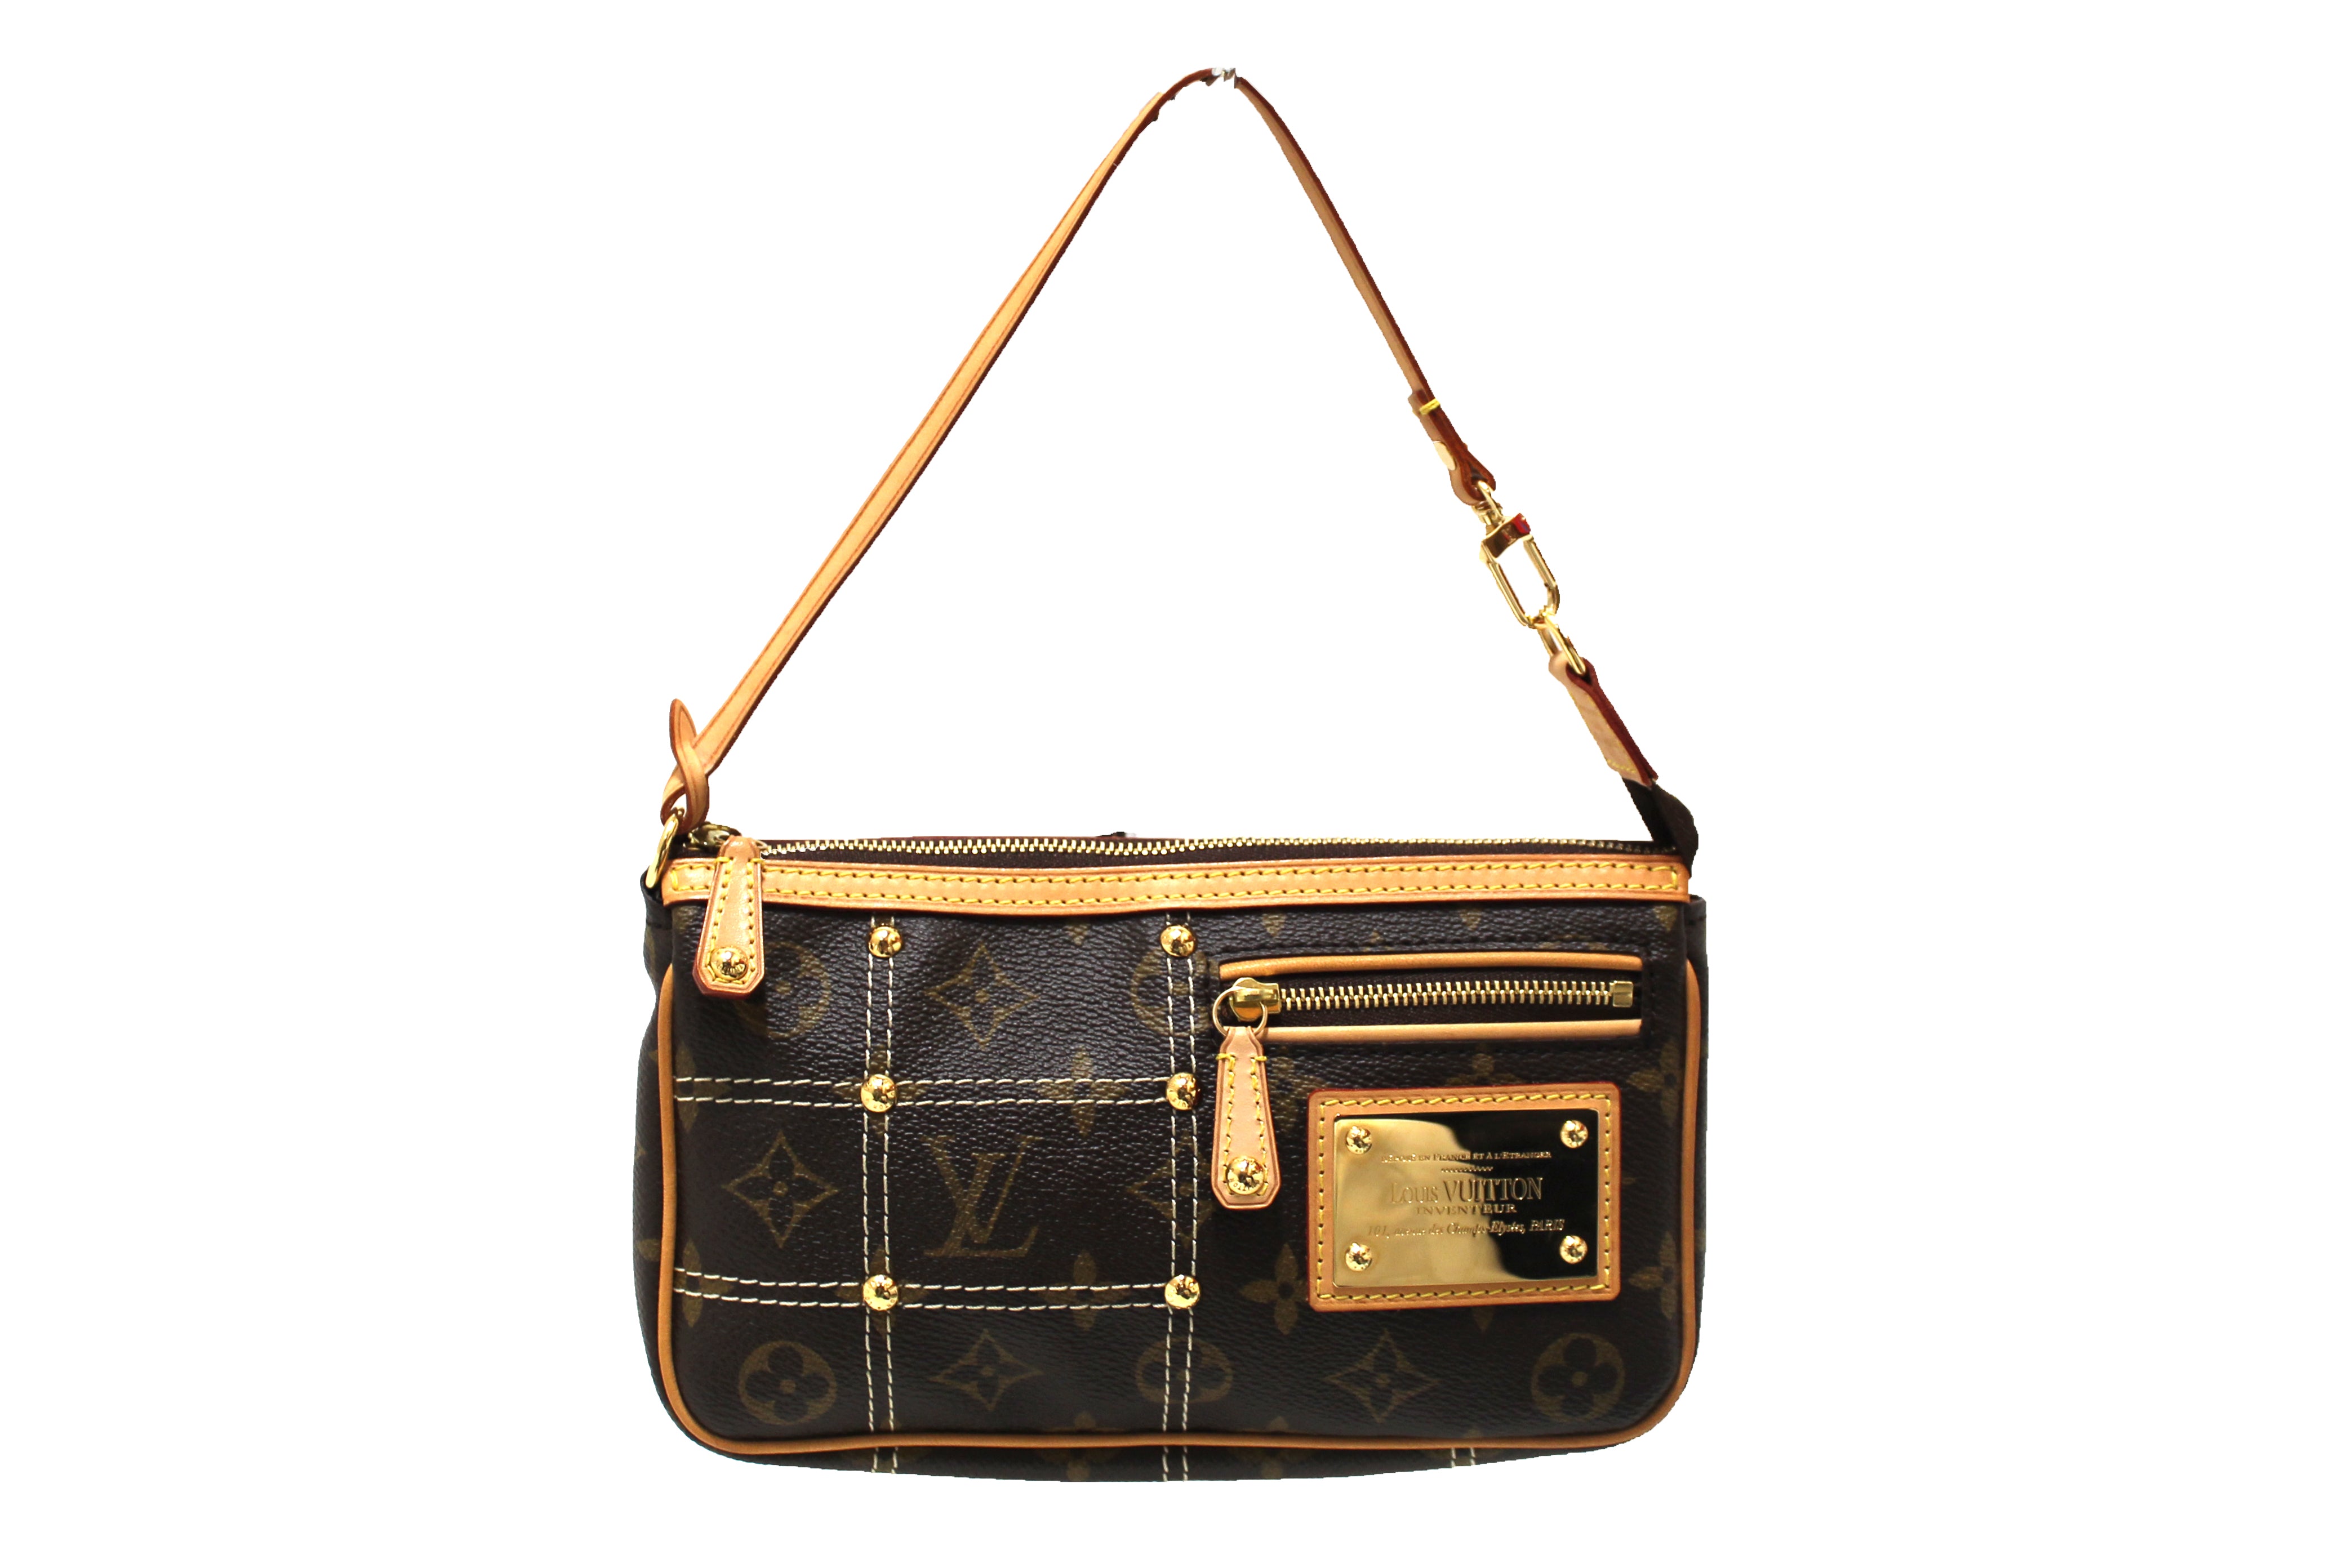 SOLD* Authentic Louis Vuitton Riveting Handbag